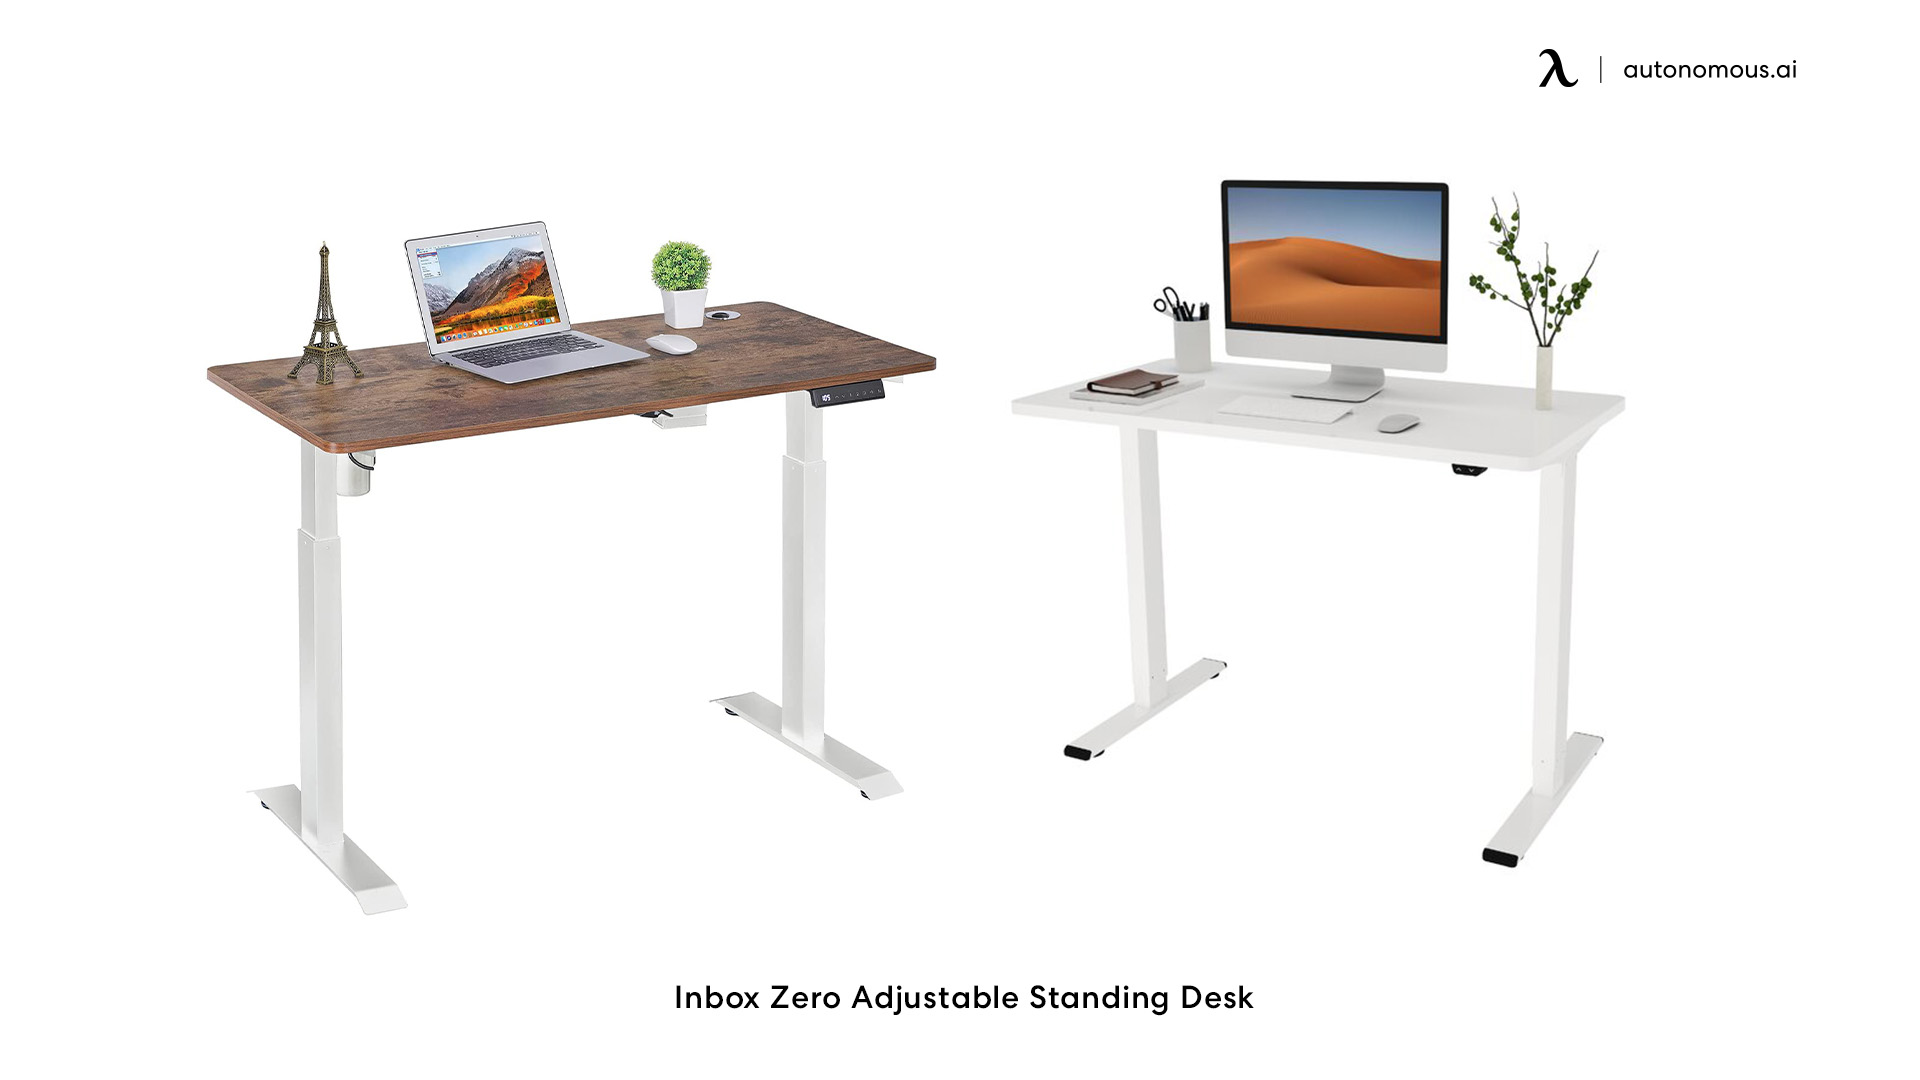 Inbox Zero Adjustable Standing Desk